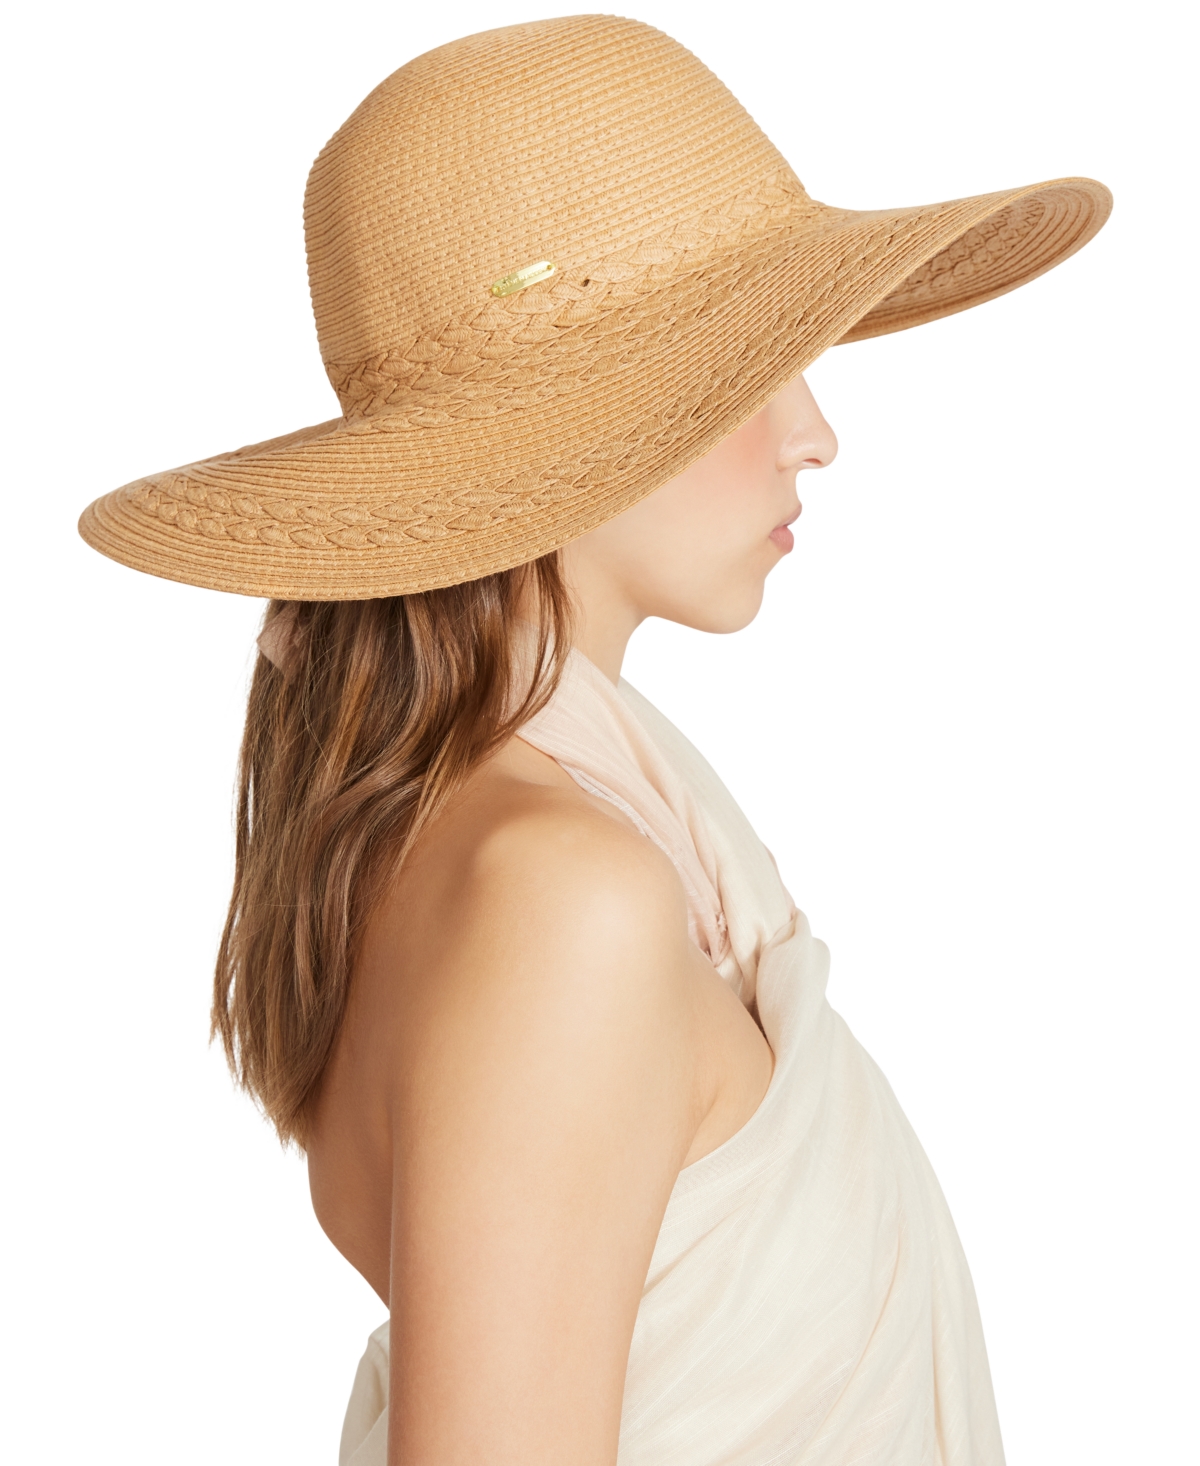 Women's Braided Straw Floppy Hat - Tan